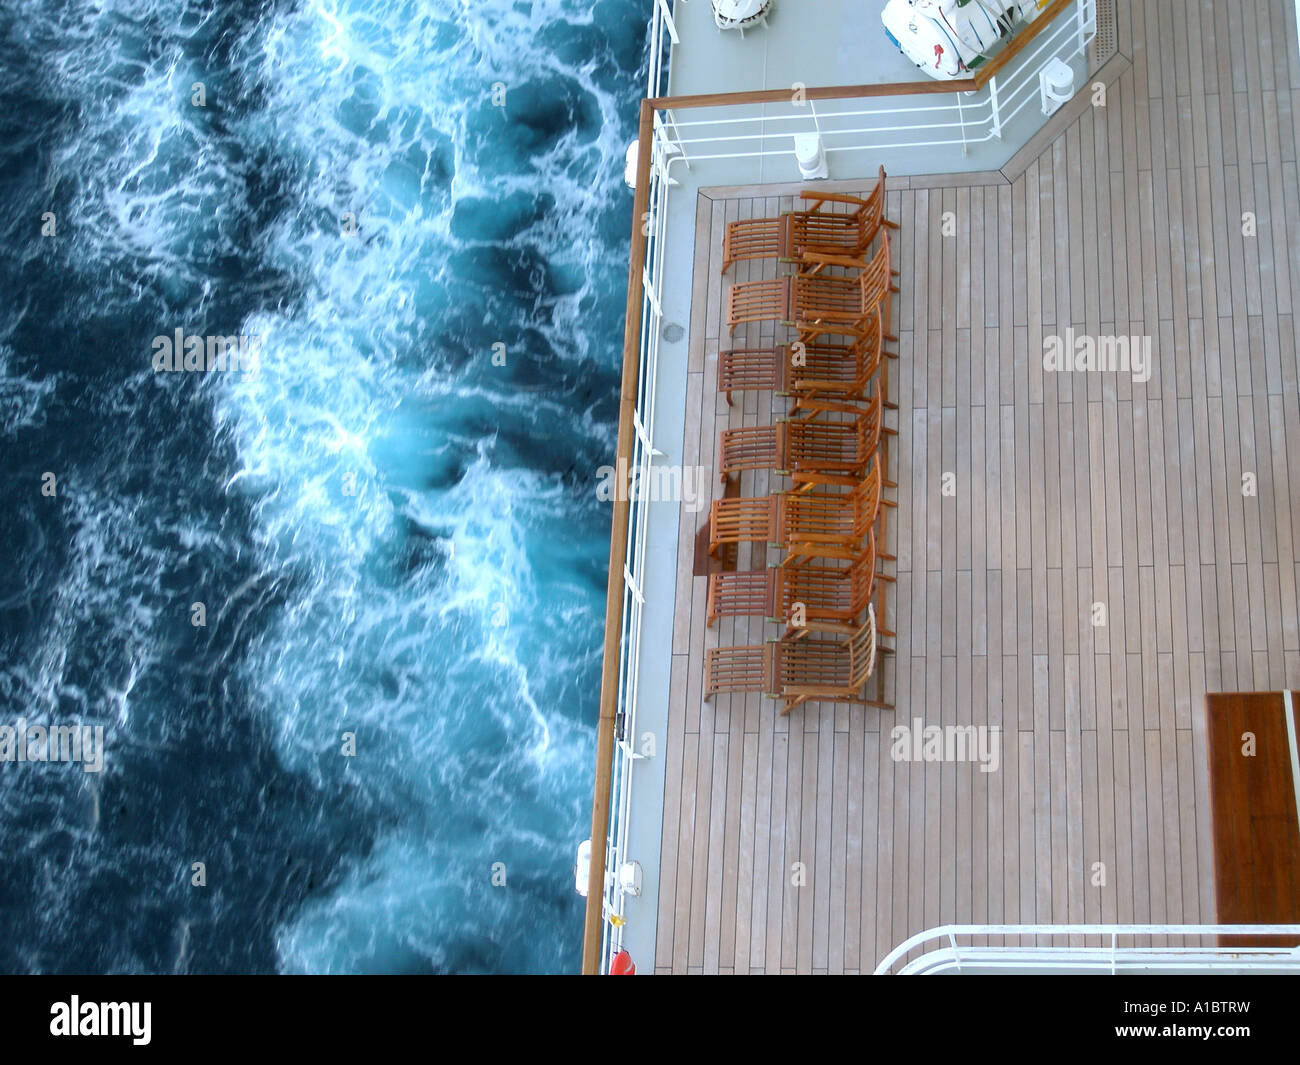 Queen Mary 2 - sedie a sdraio si affacciano a nord Atlantico da ponte della Queen Mary 2 Foto Stock